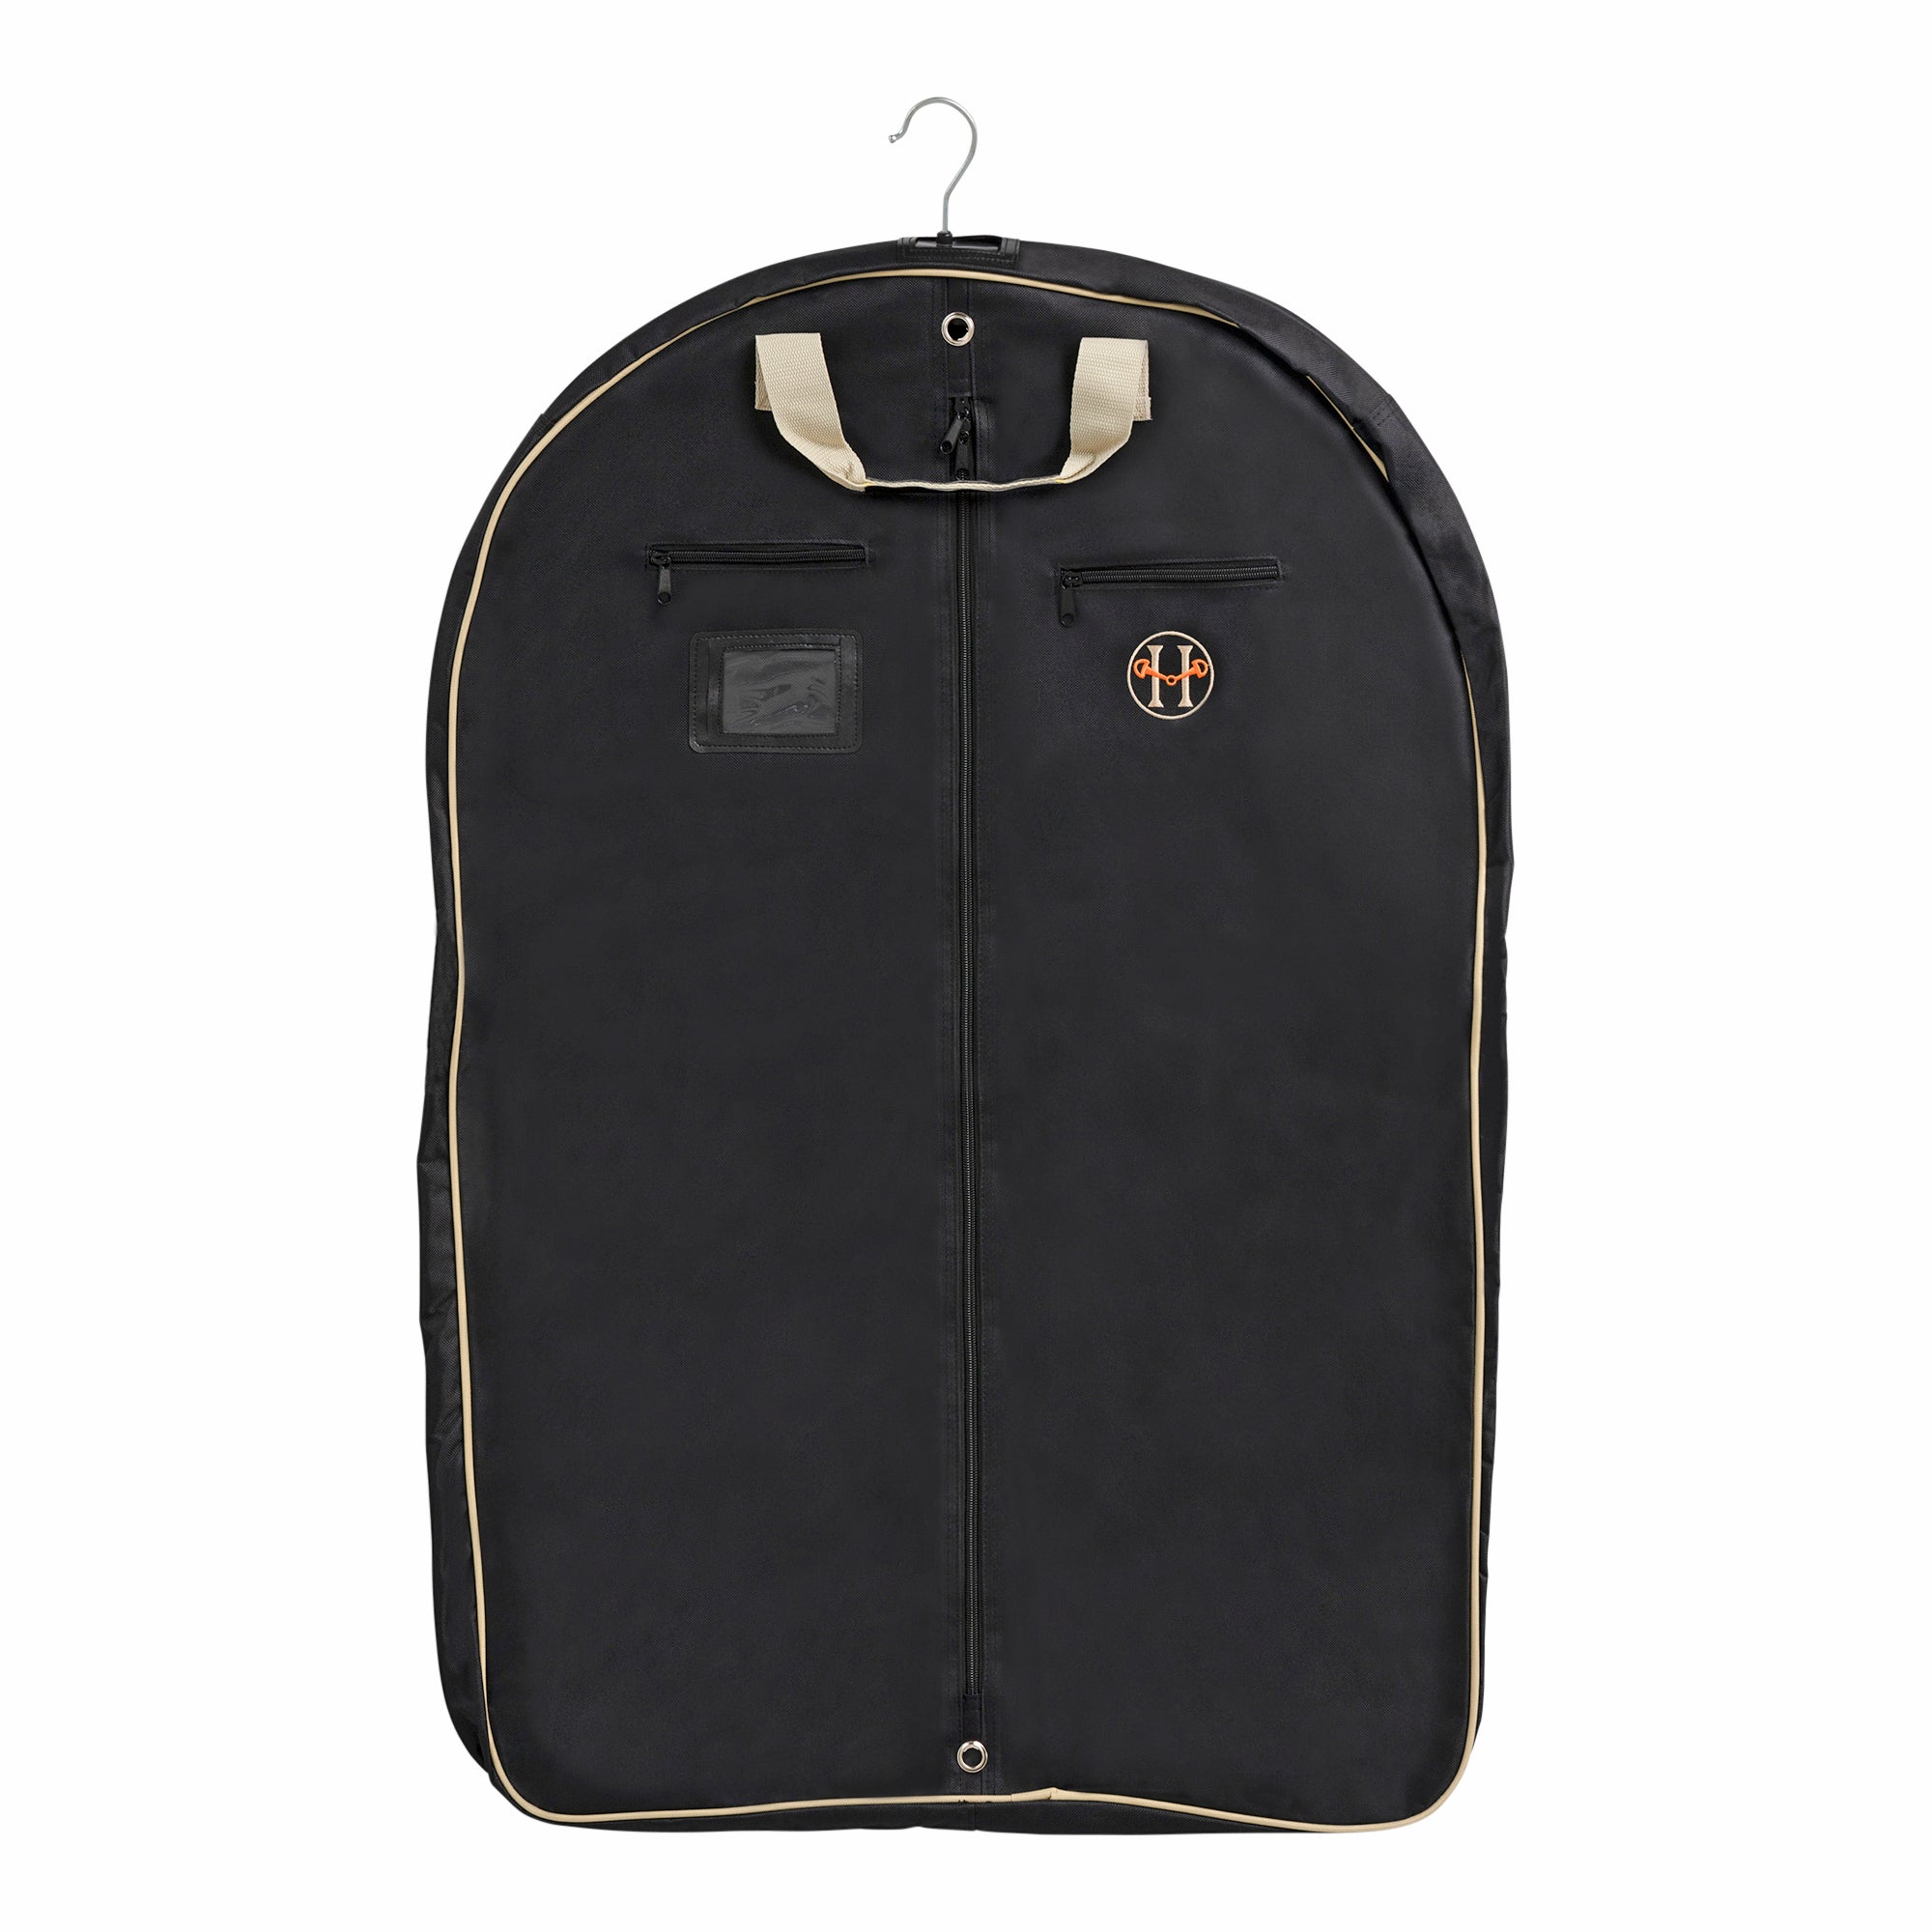 Tri-Fold Suit Bag | Bags, Leather garment bag, Suit bag